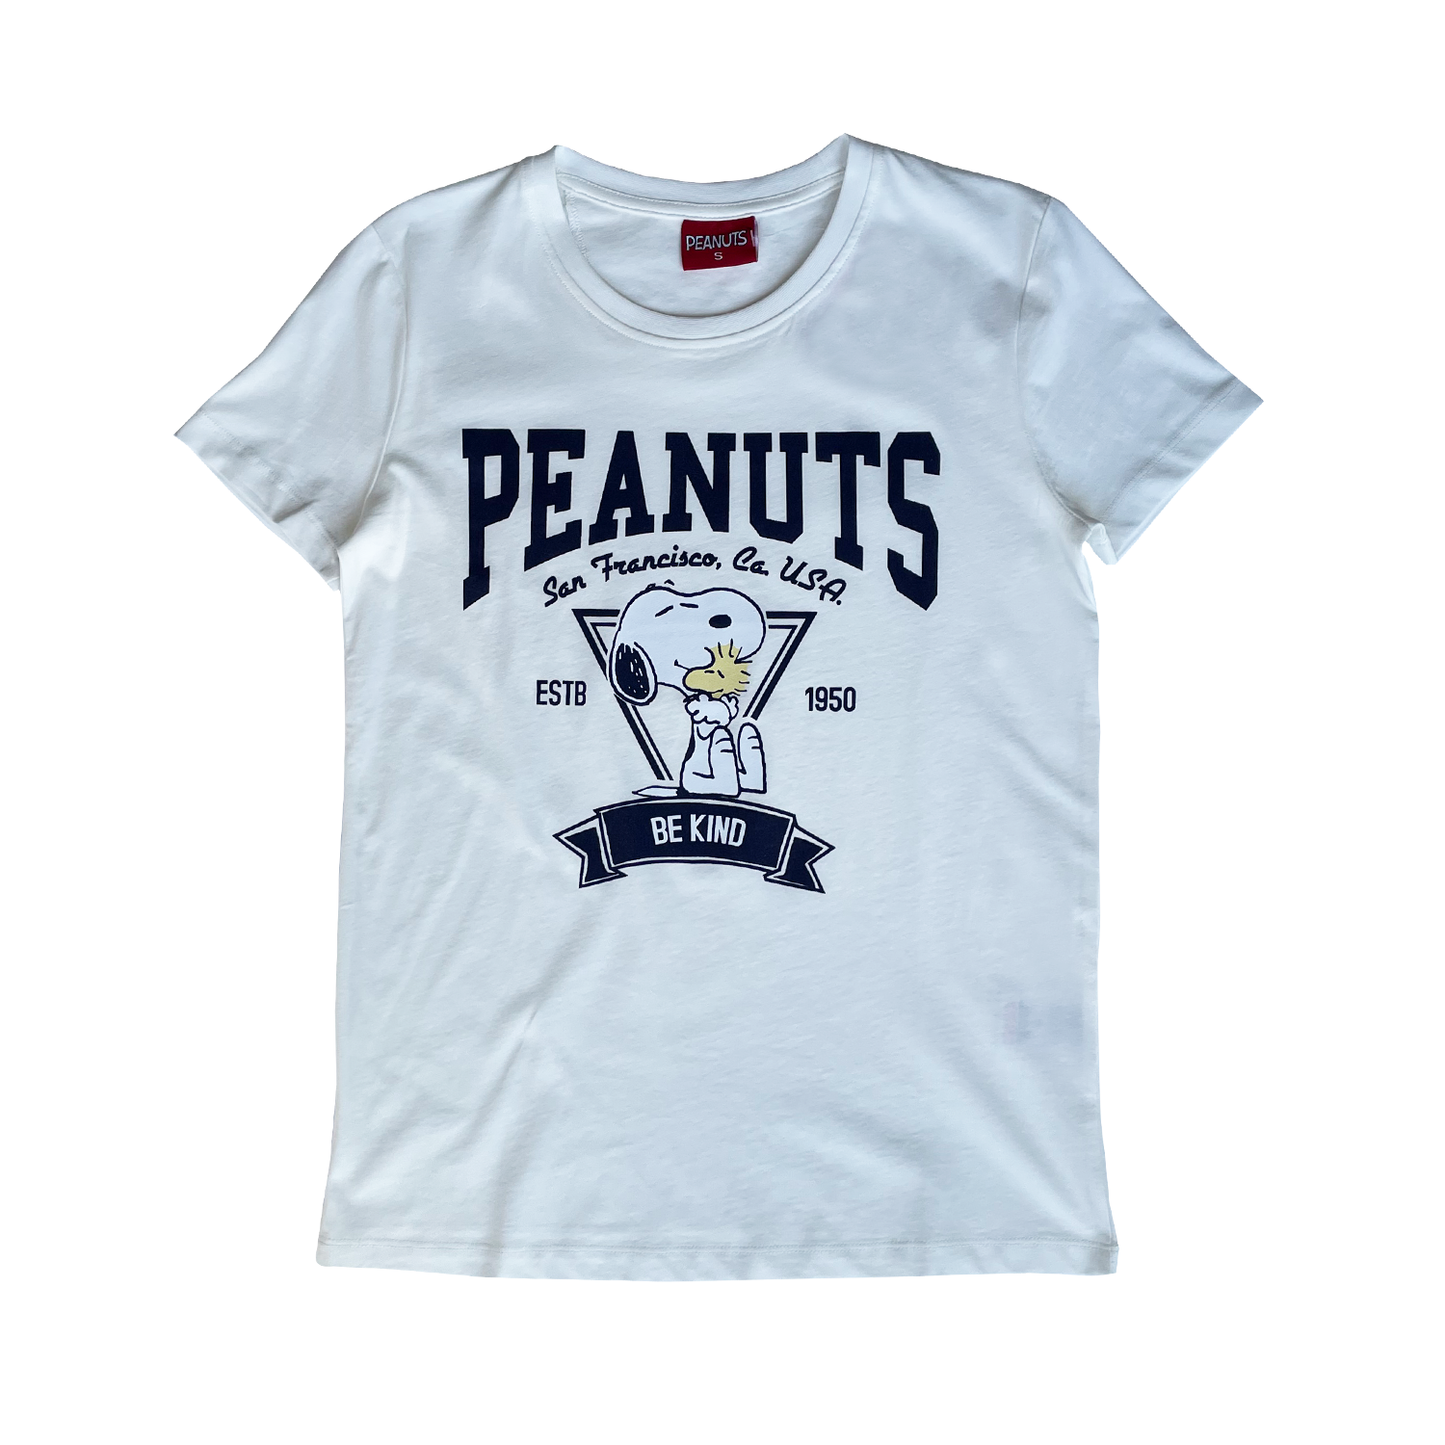 Peanuts - Be Kind T-Shirt